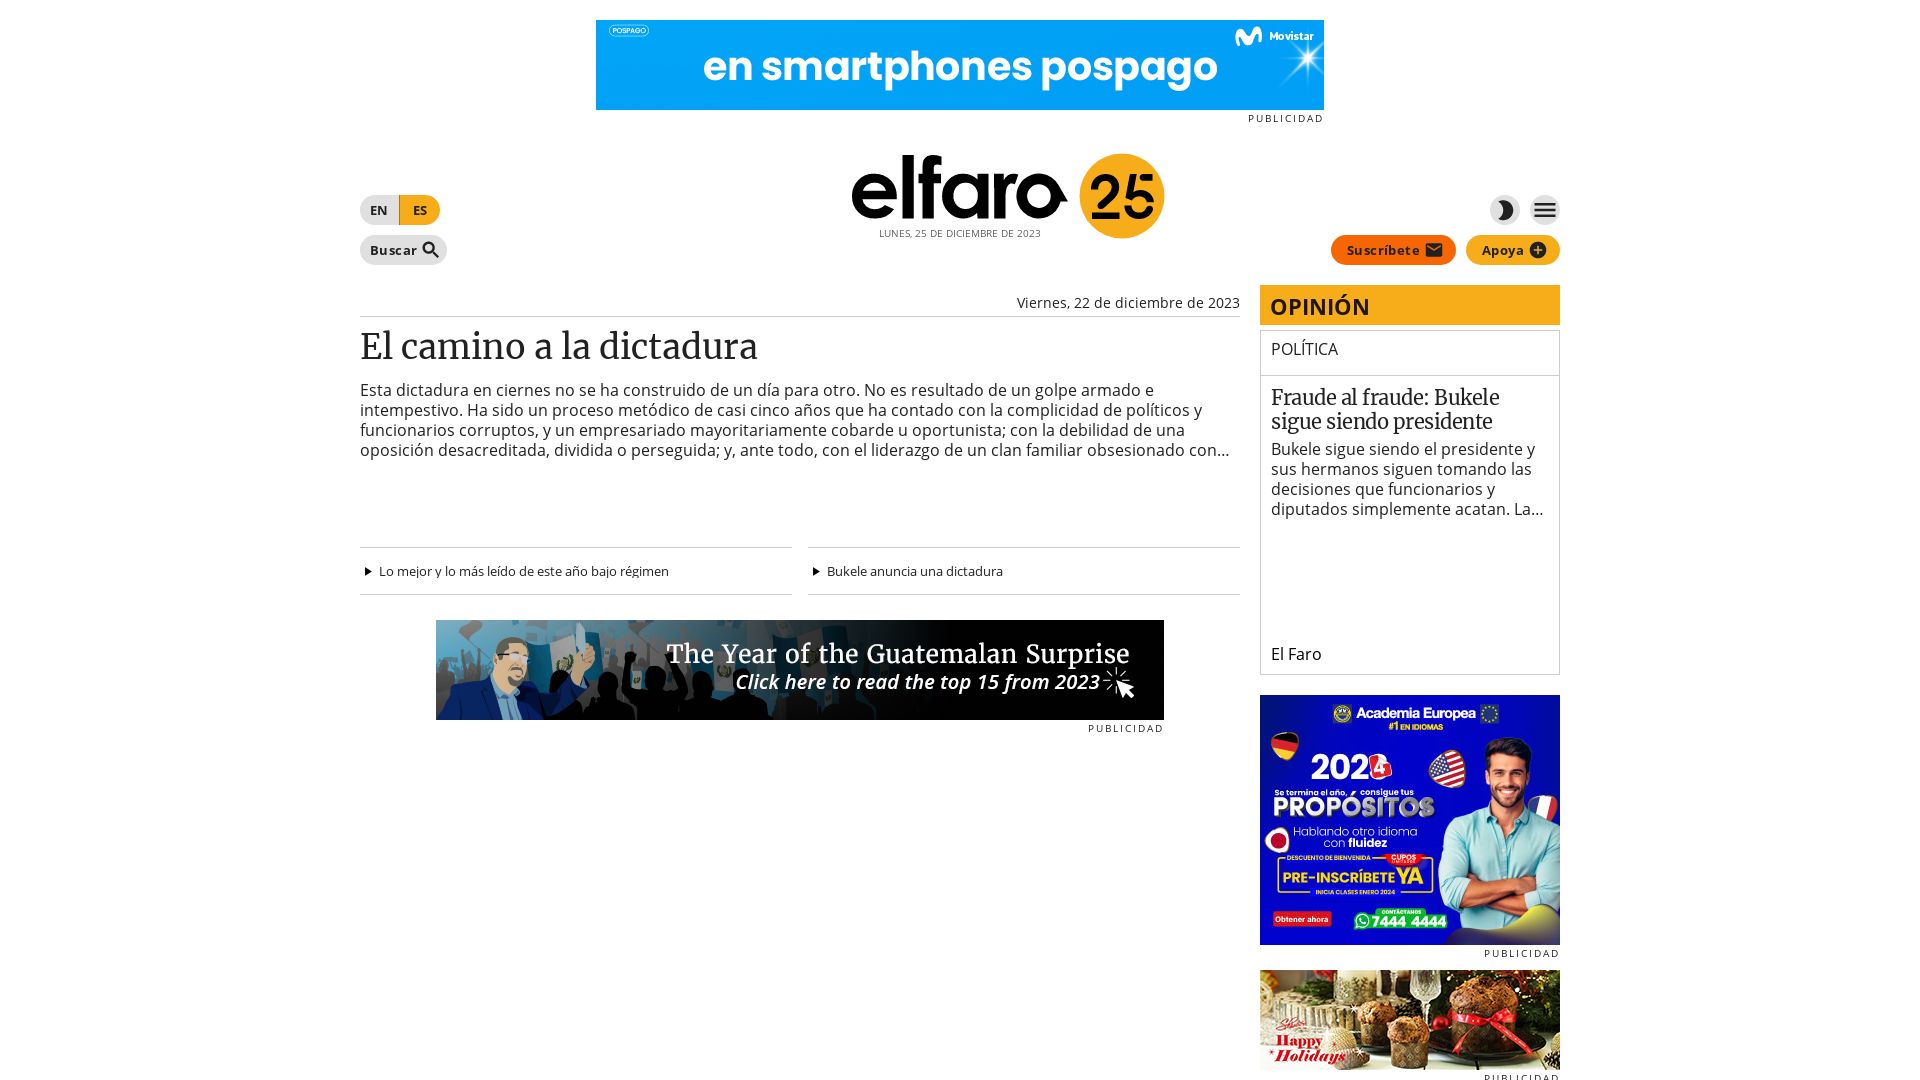 вебсайт elfaro.net Є   ONLINE